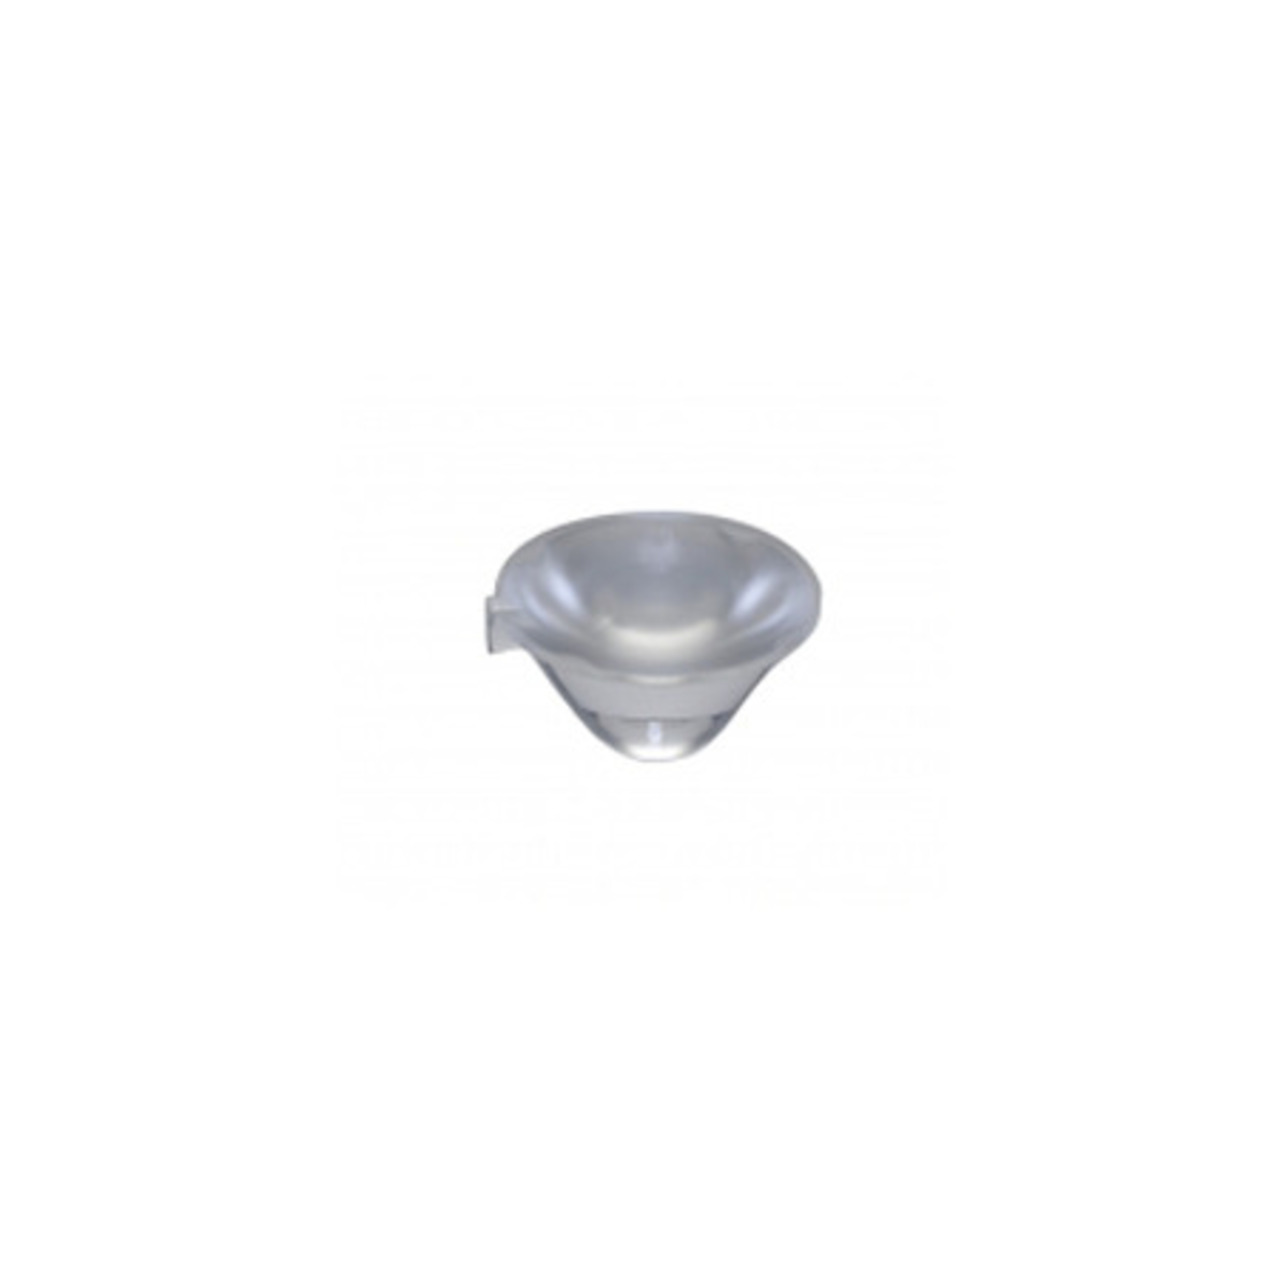 Optik für P5II-LED- Abstrahlwinkel 23-9- Durchmesser 26-5 mm